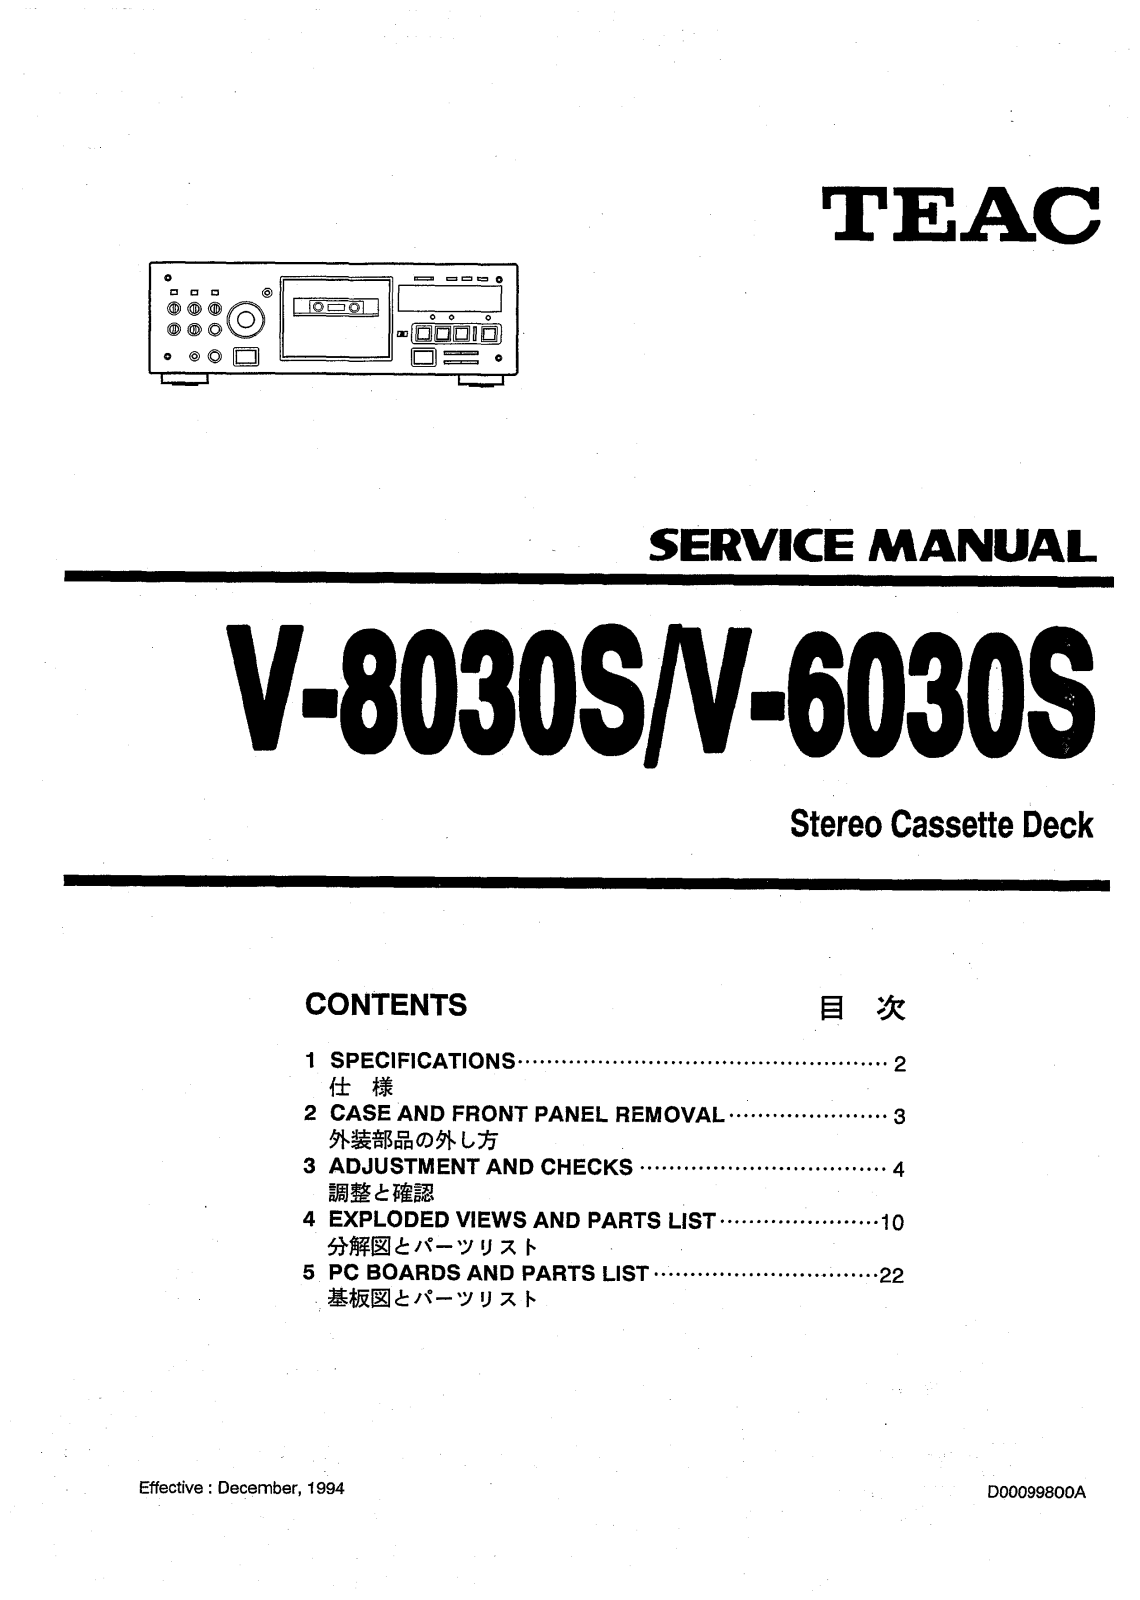 TEAC V-6030-S, V-8030-S Service manual